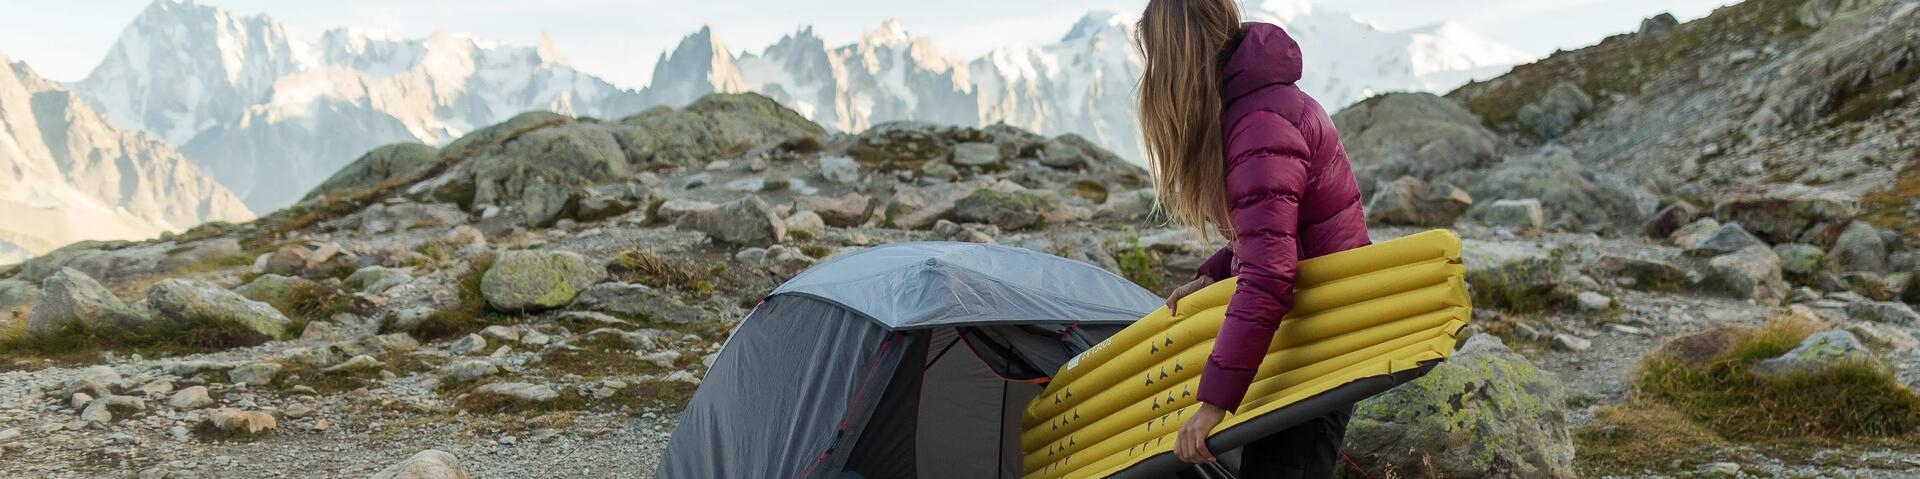 hoe-kies-je-een-slaapmat-camping-wildkamperen-zelfopblazend-schuim-luchtbed